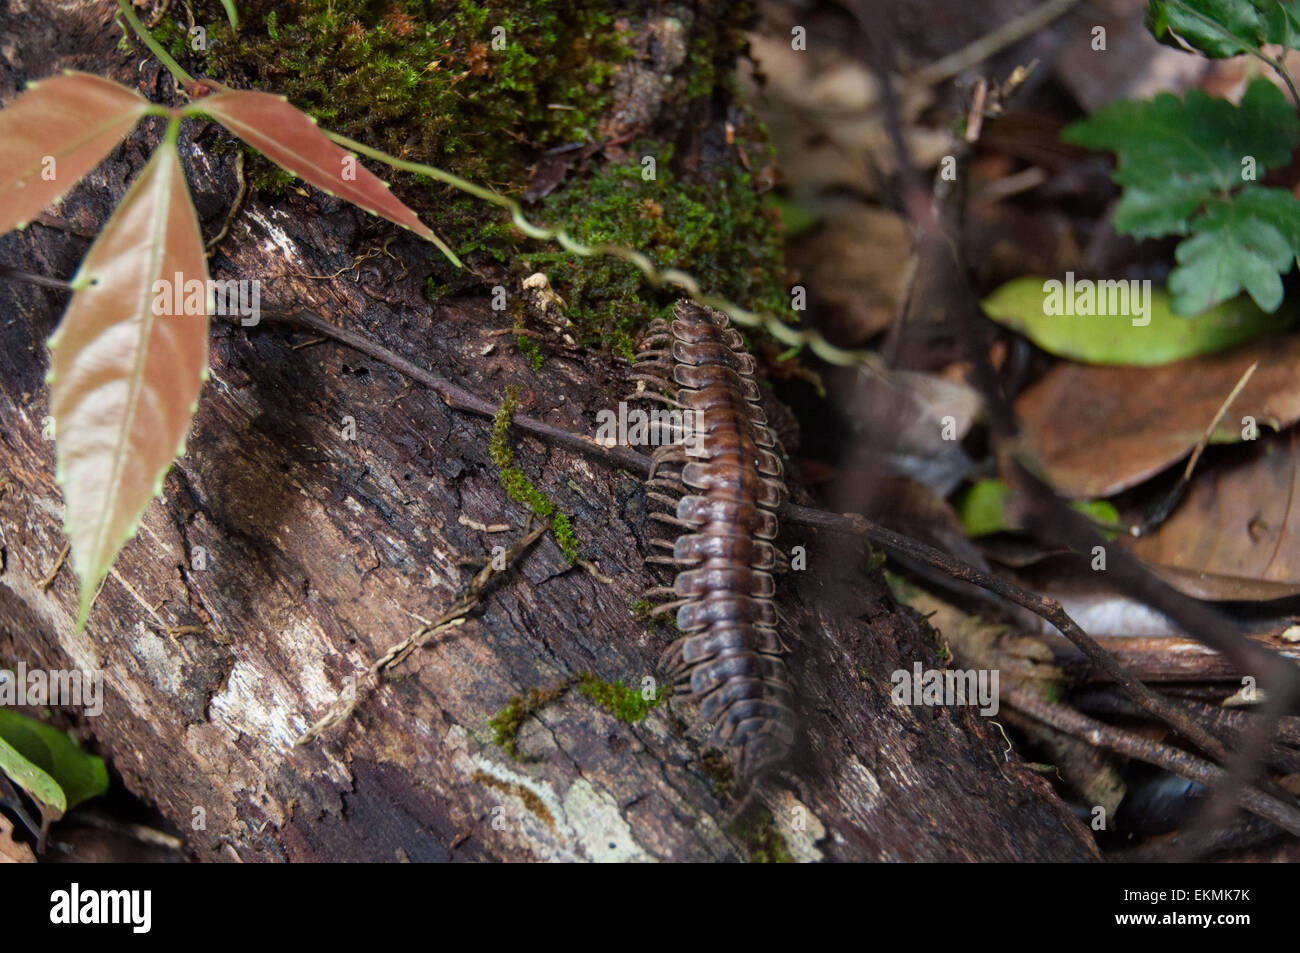 Harmless jungle centipede in Danum Valley Conservation, Borneo, Malaysia Stock Photo